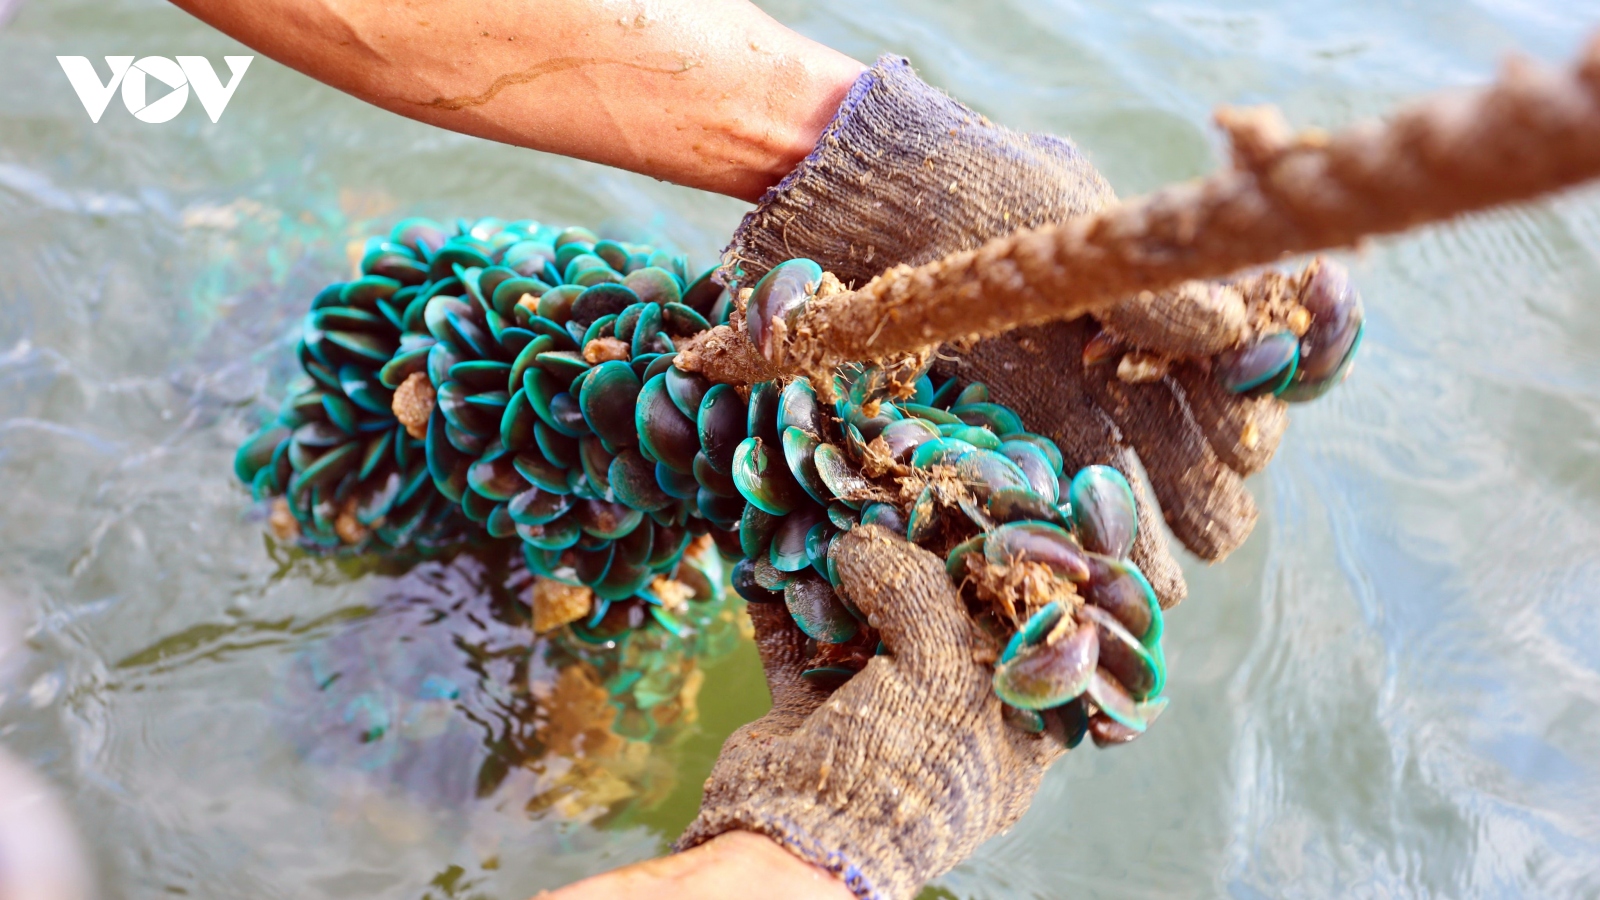 Ngư dân Quảng Nam lặn bắt vẹm xanh tặng khu cách ly